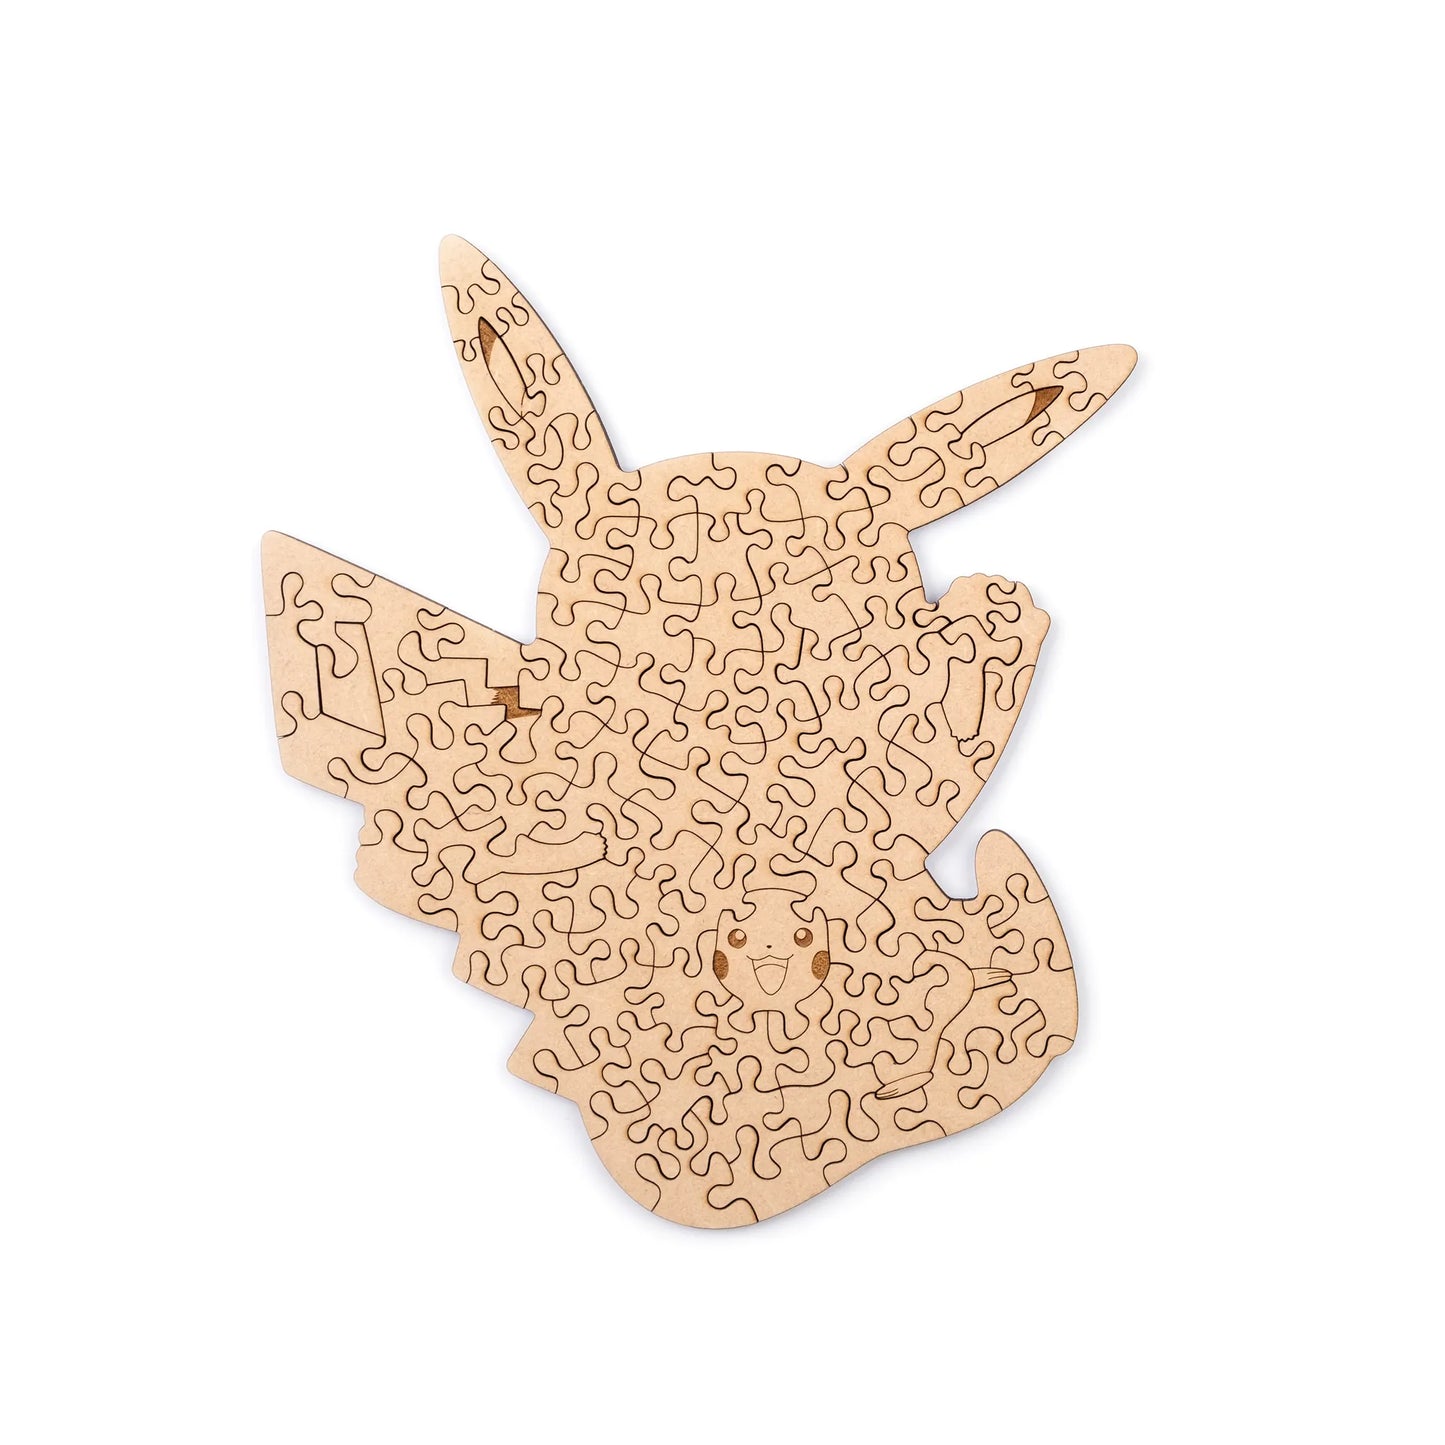 [IN STOCK] Pokémon Wooden Puzzle [HELLOFISH] - Pikachu